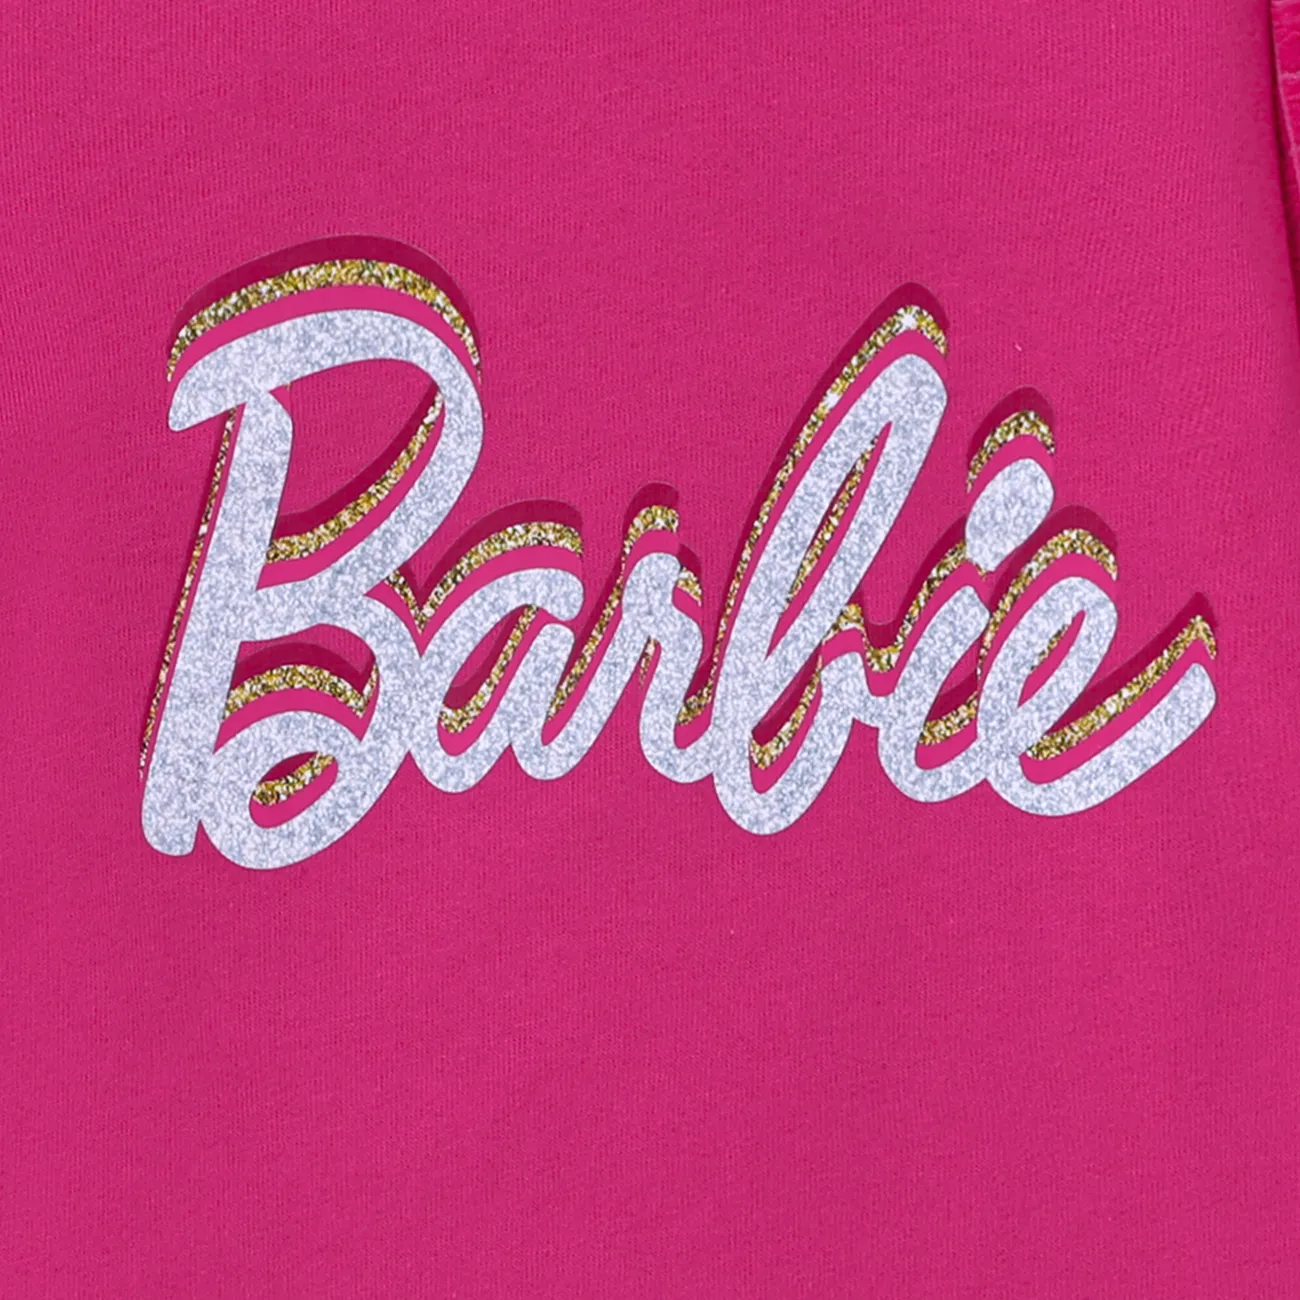 Barbie Kinder Mädchen Puffärmel Buchstaben Kleider roseo big image 1